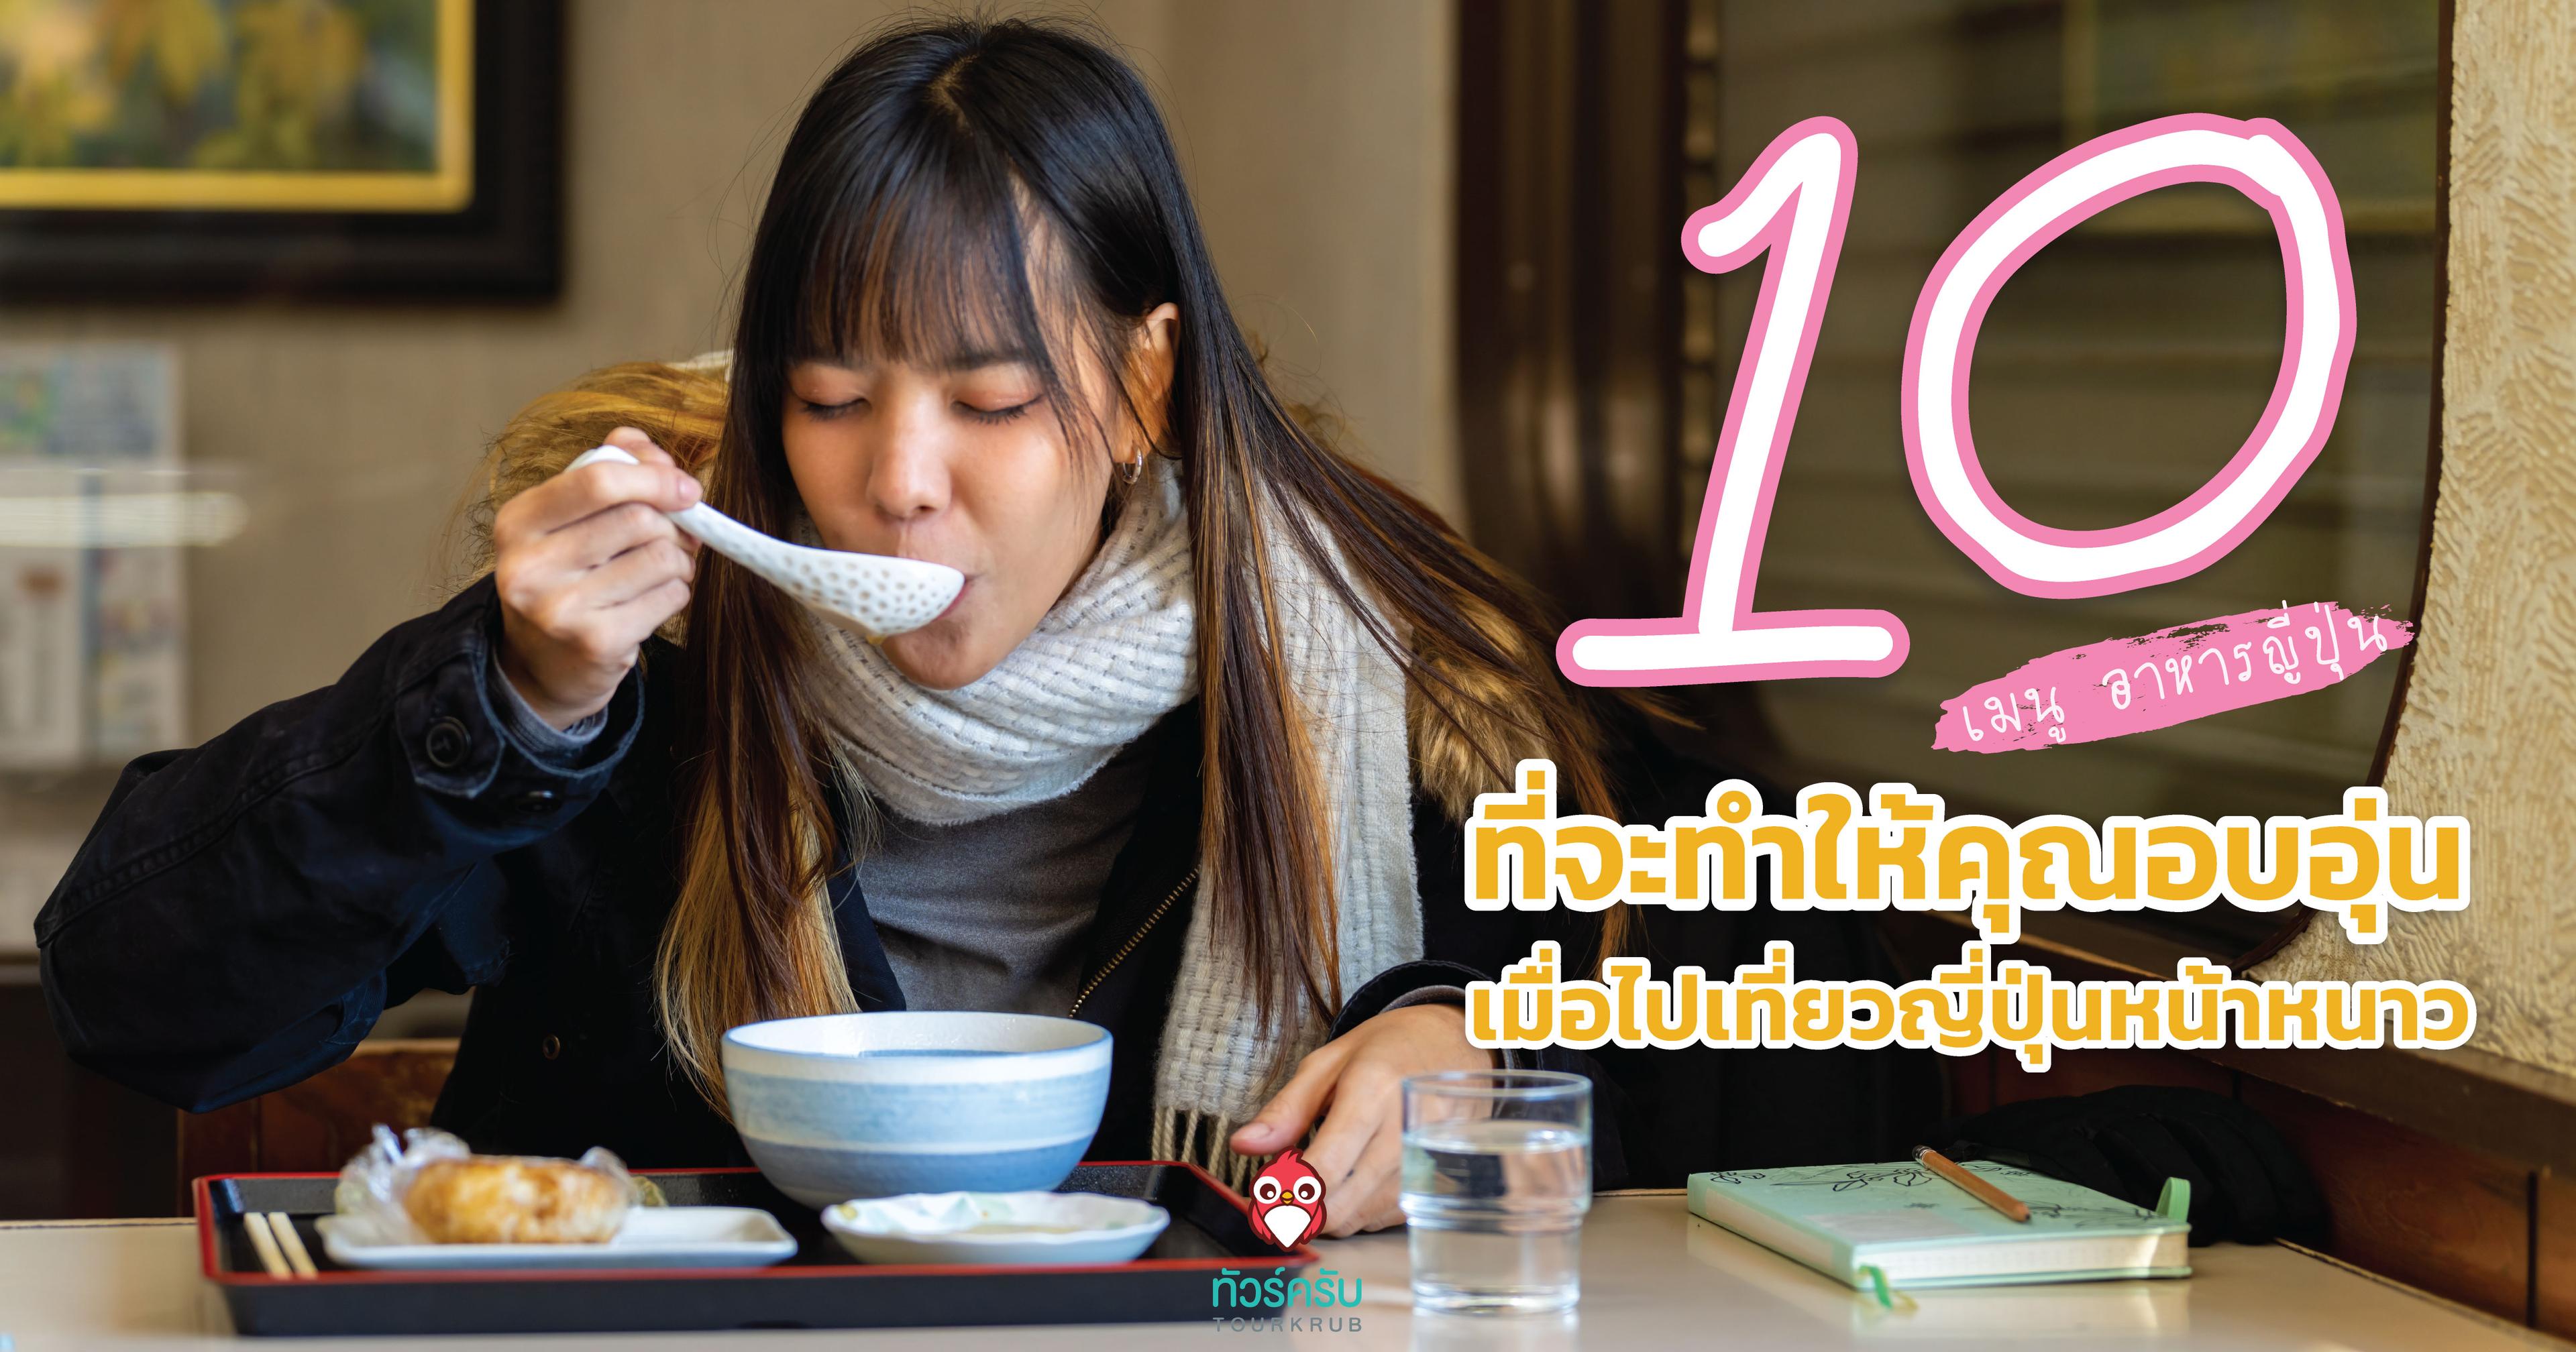 10 เมนูอาหารญี่ปุ่น ที่จะทำให้คุณอบอุ่น เมื่อไป เที่ยว ญี่ปุ่น หน้าหนาว 